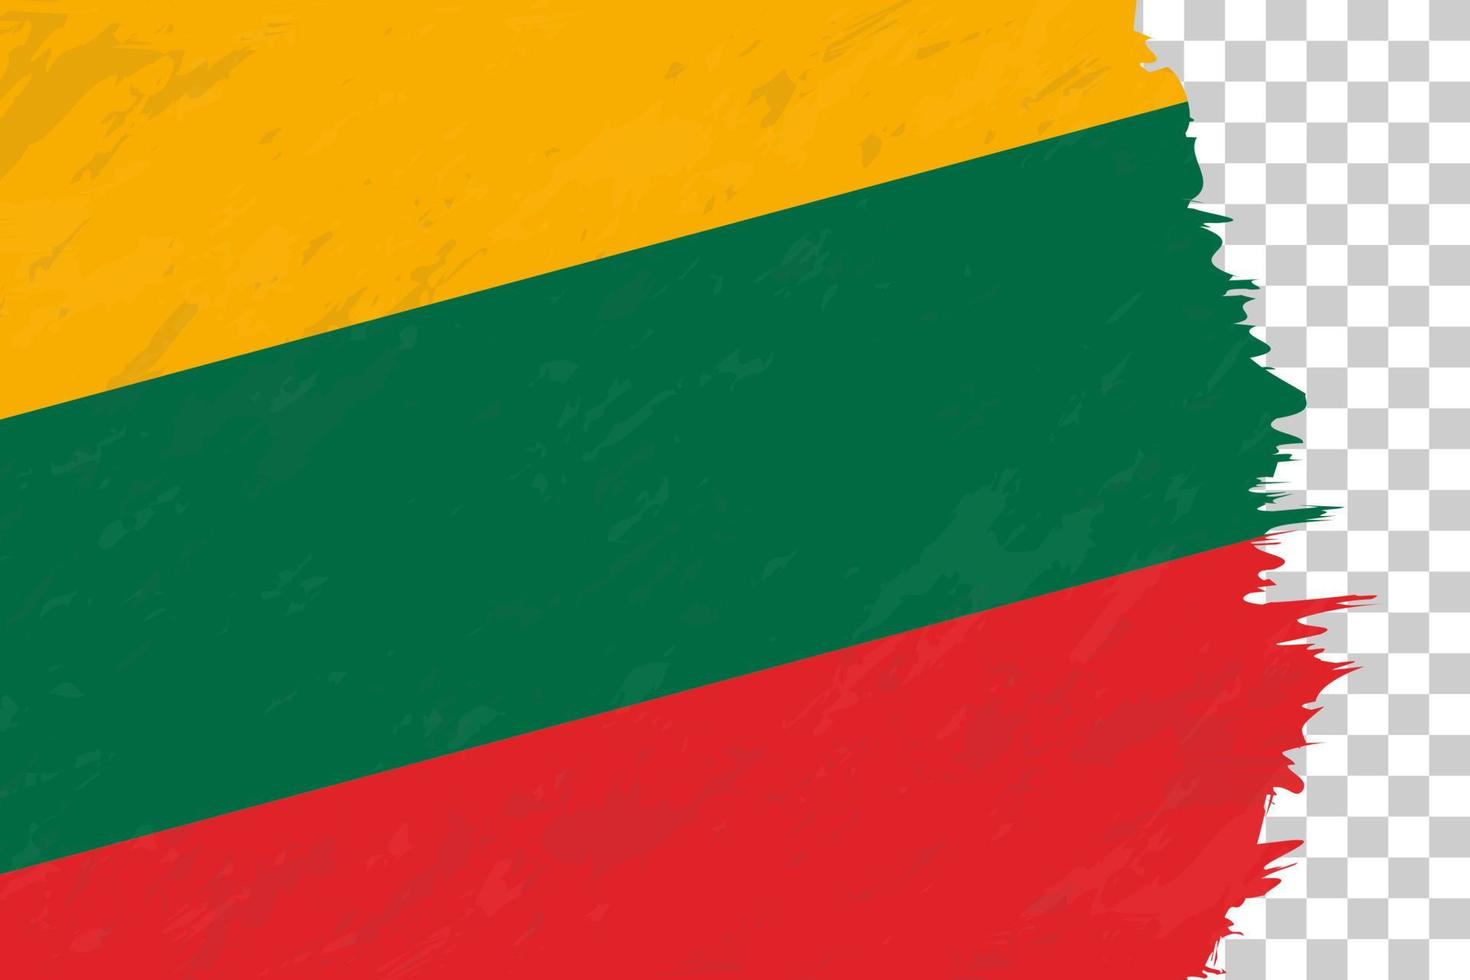 drapeau brossé grunge abstrait horizontal de la lituanie sur la grille transparente. vecteur